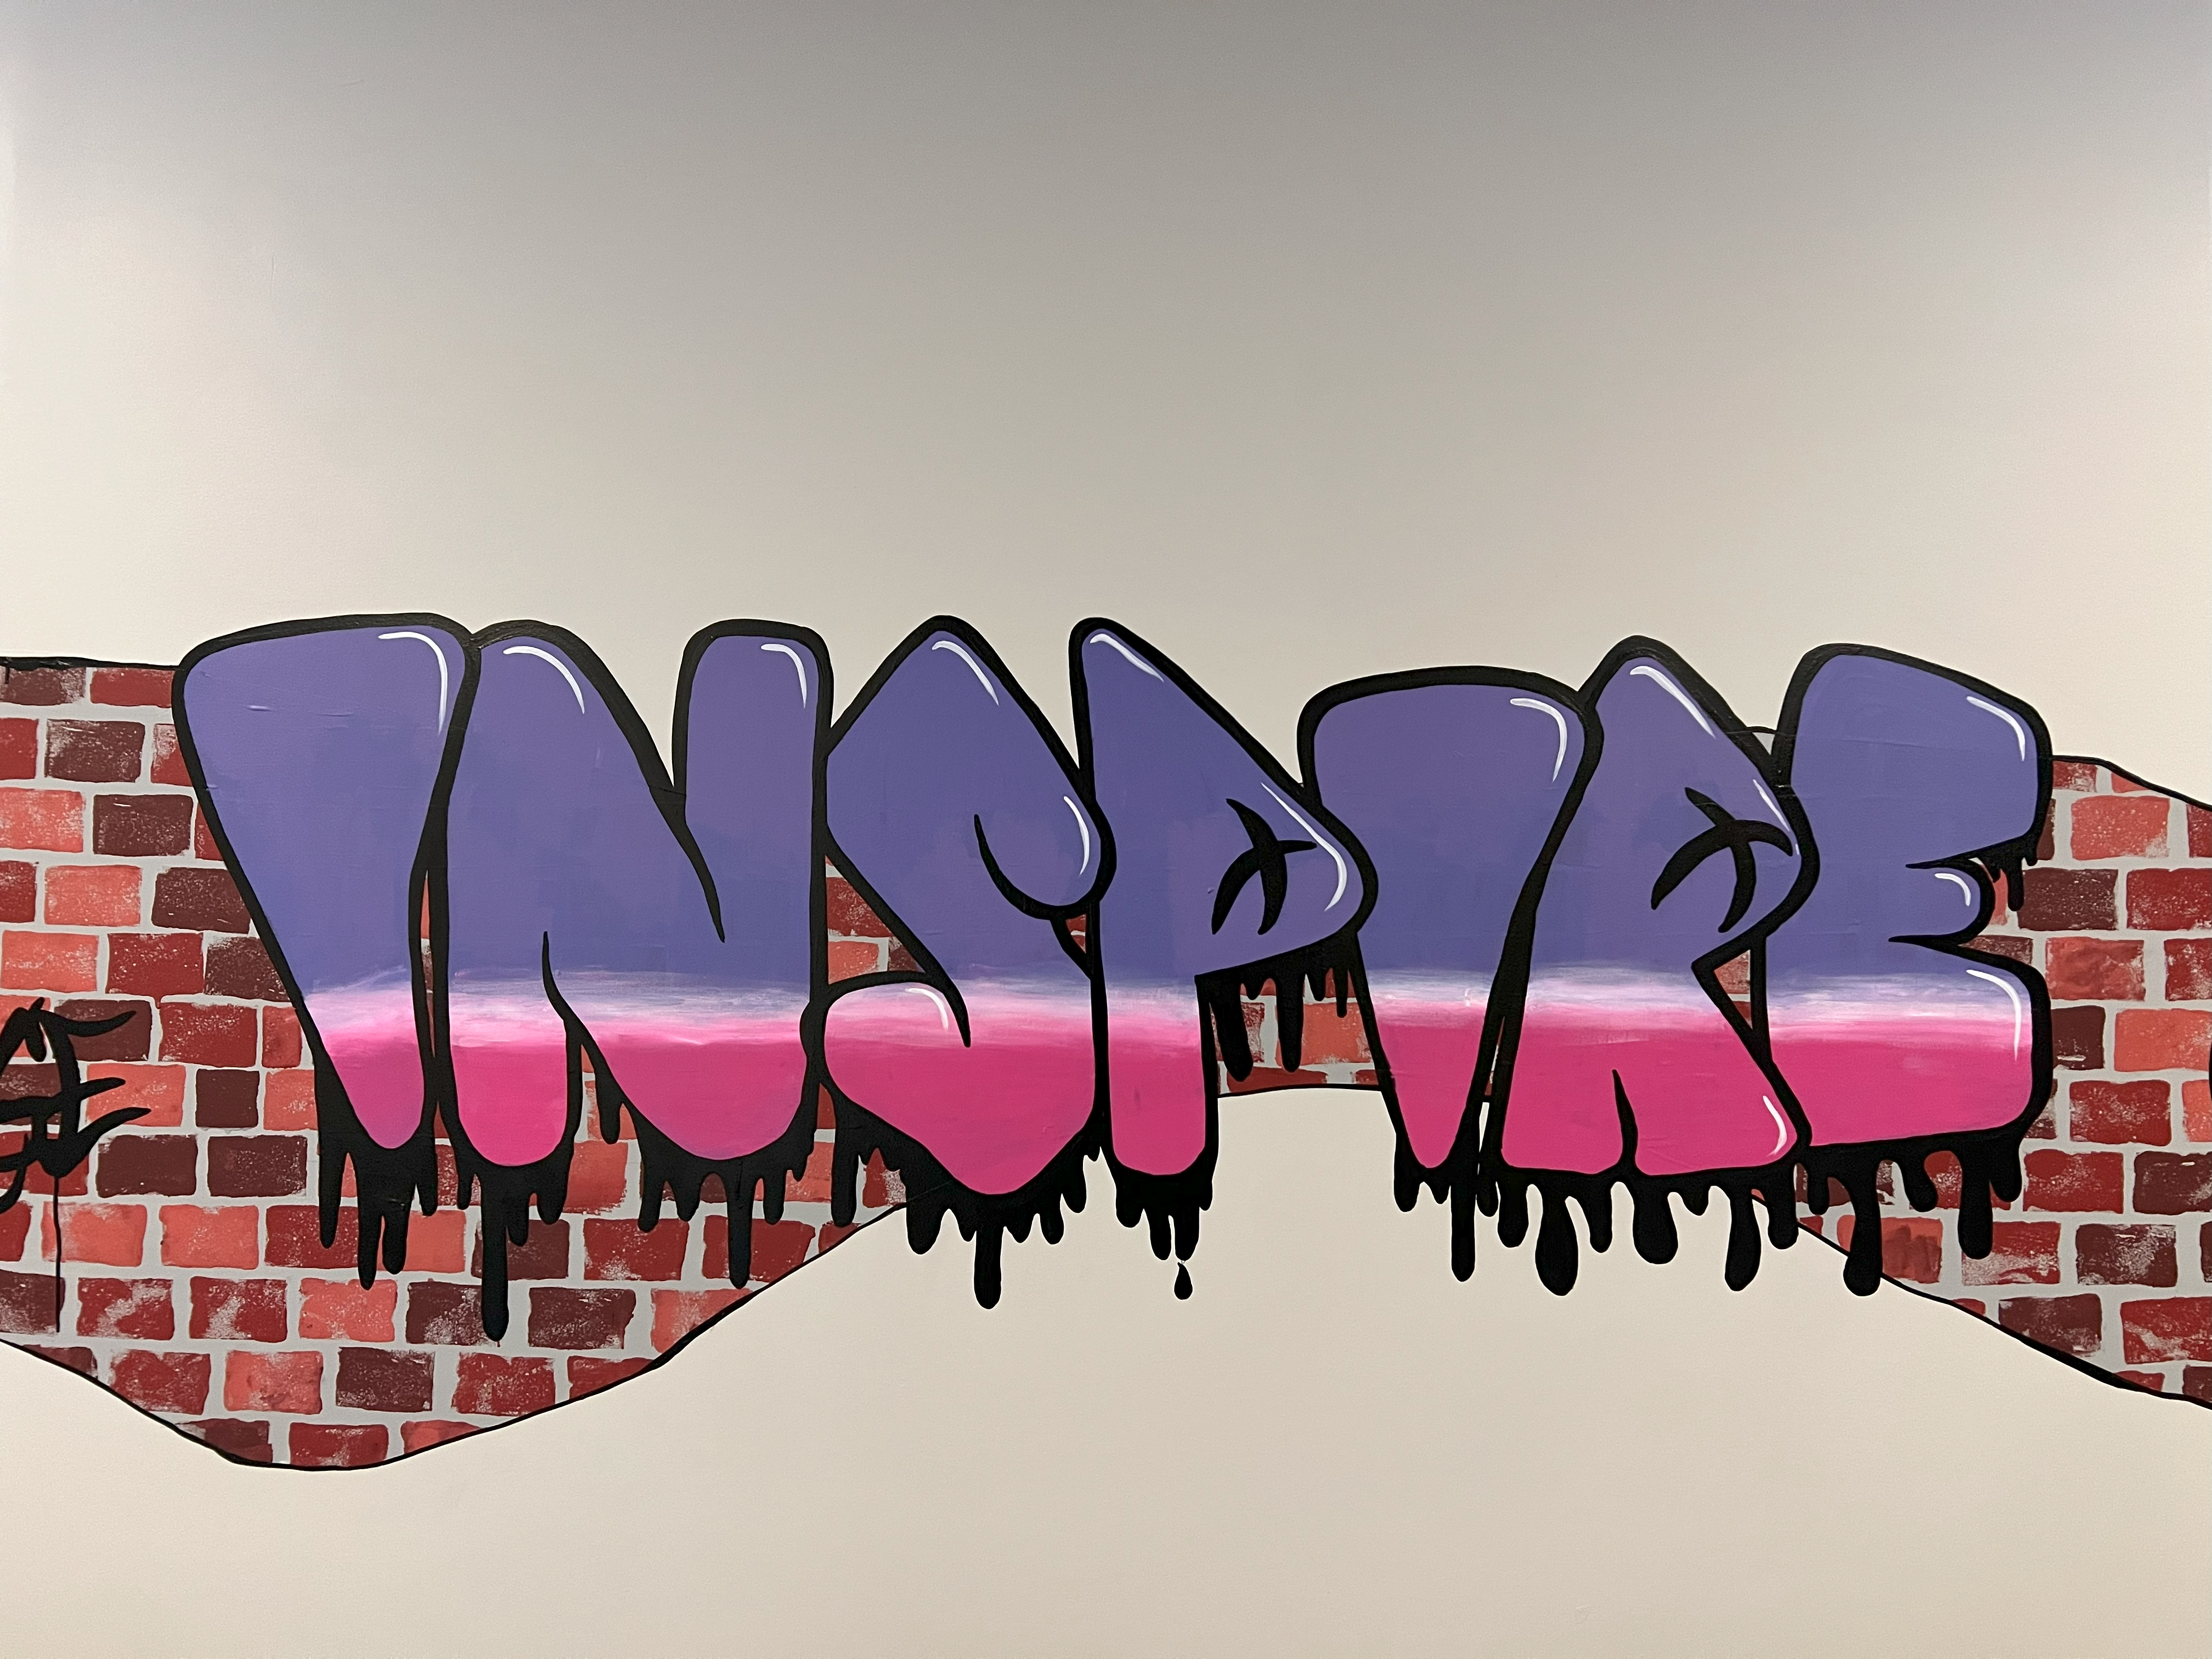 Grafitti Text: Inspire